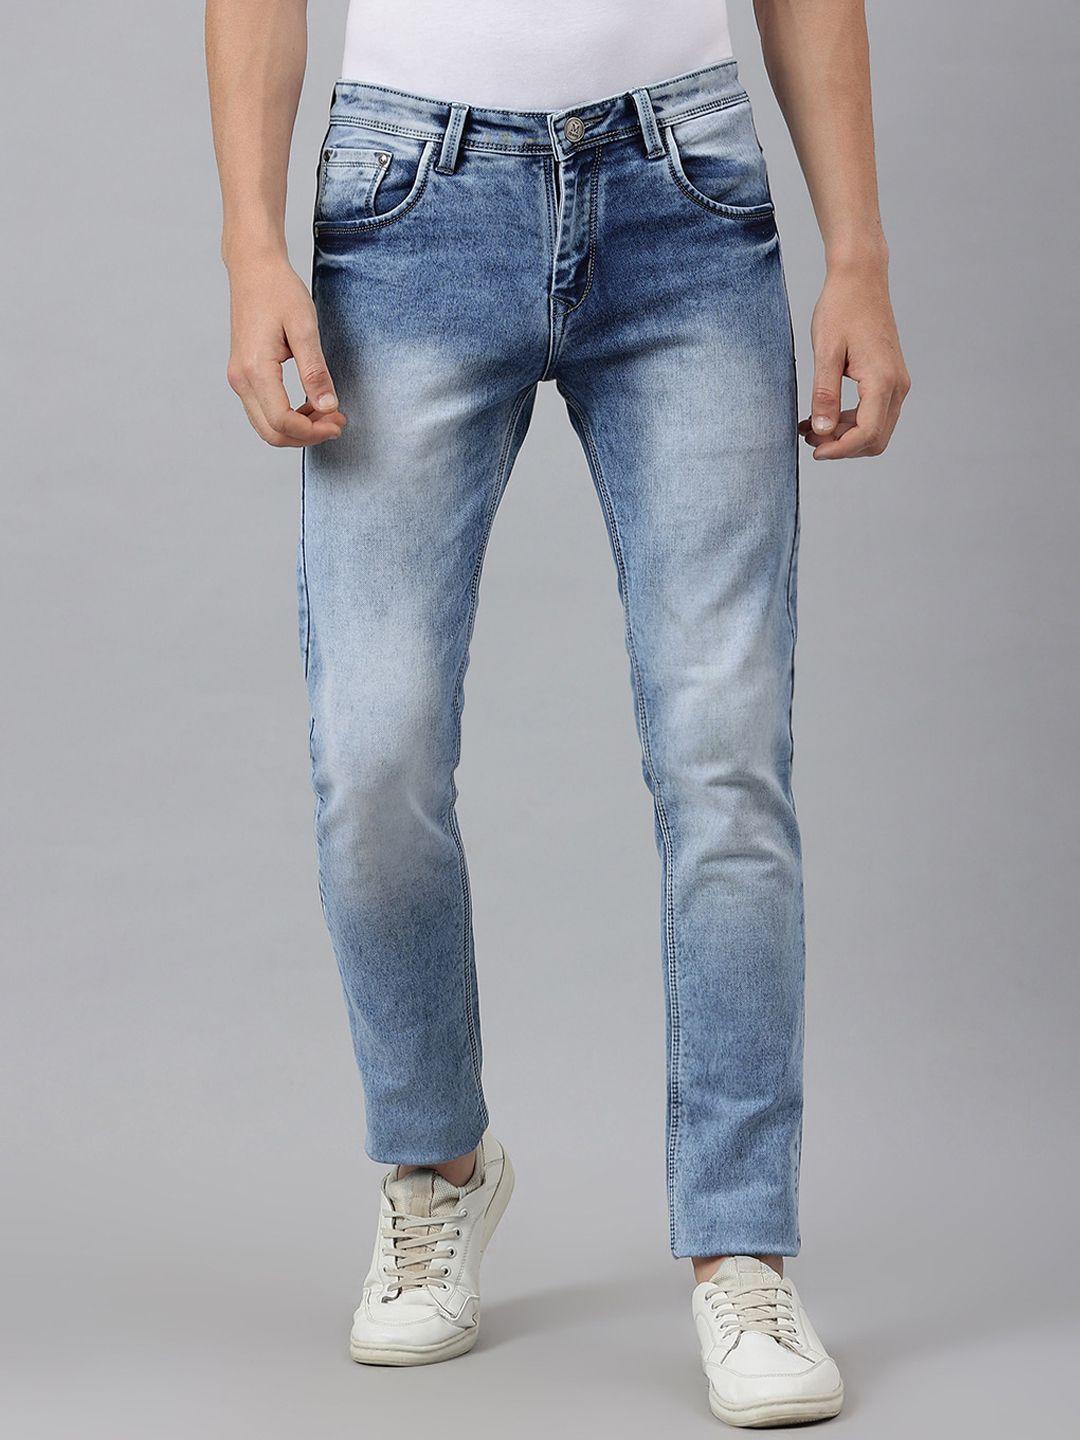 mr-button-men-blue-slim-fit-heavy-fade-cotton-jeans